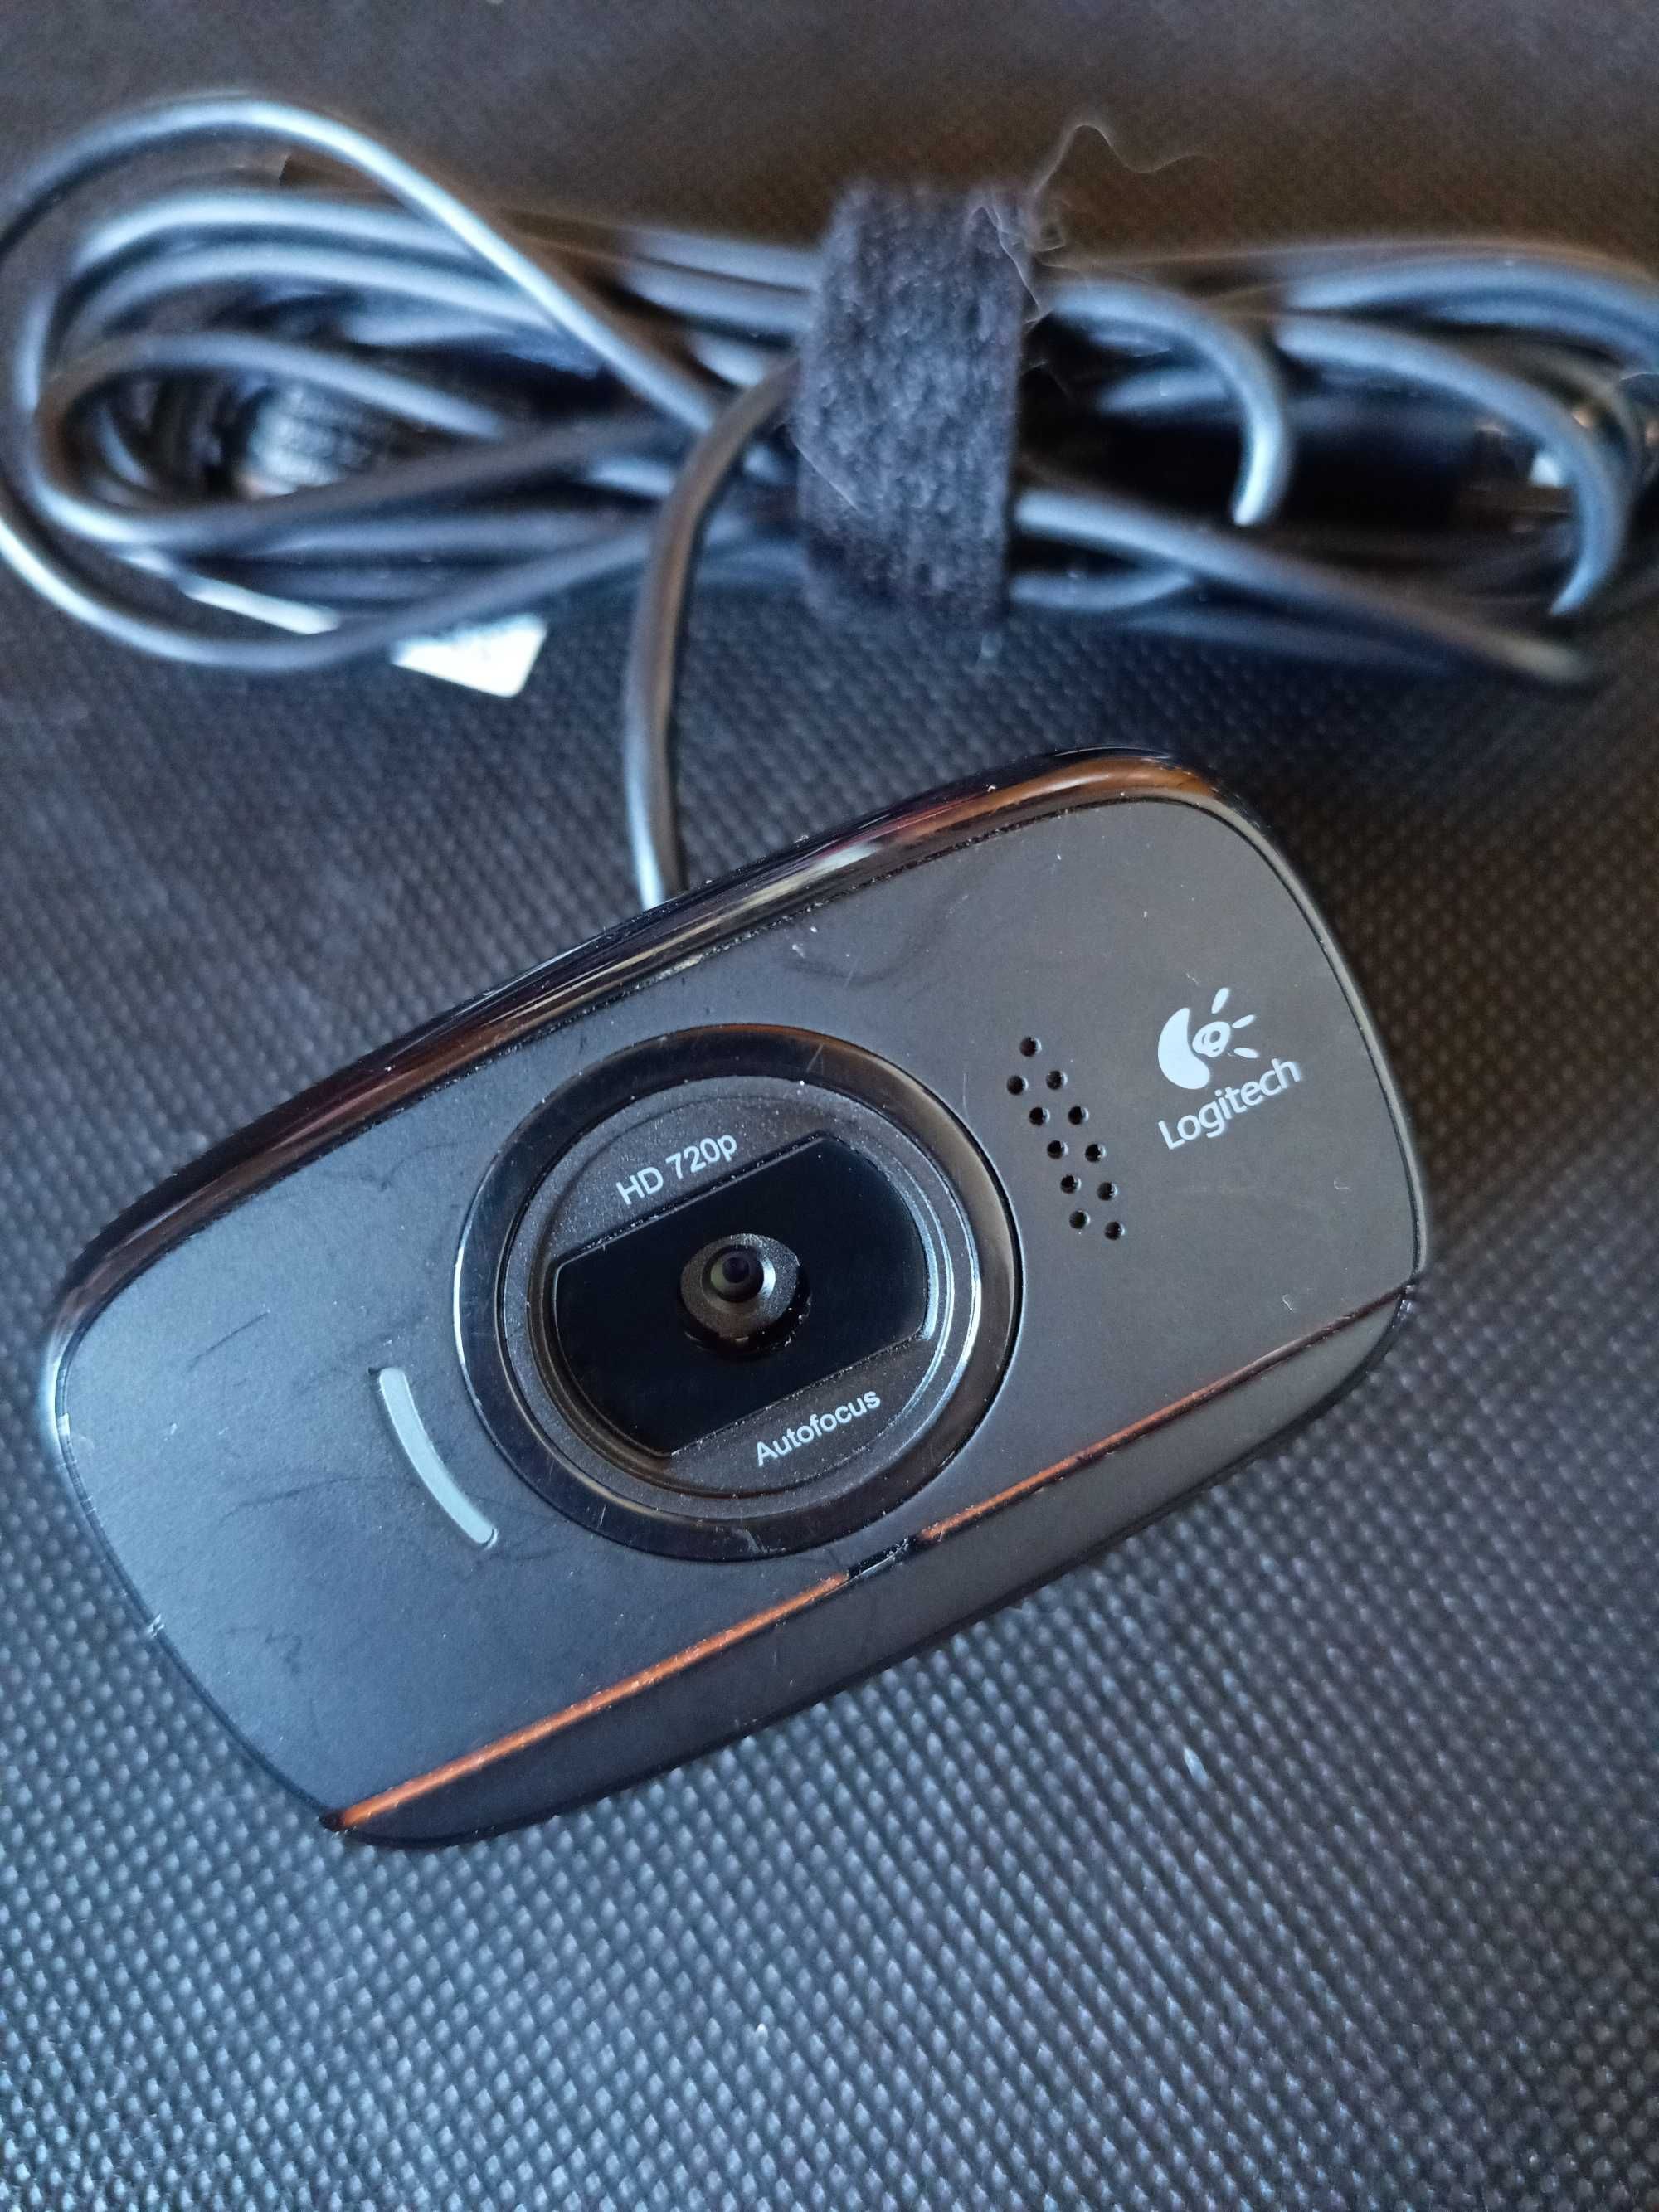 Webcam HD 720P 360º Auto Foco C525 - LOGITECH